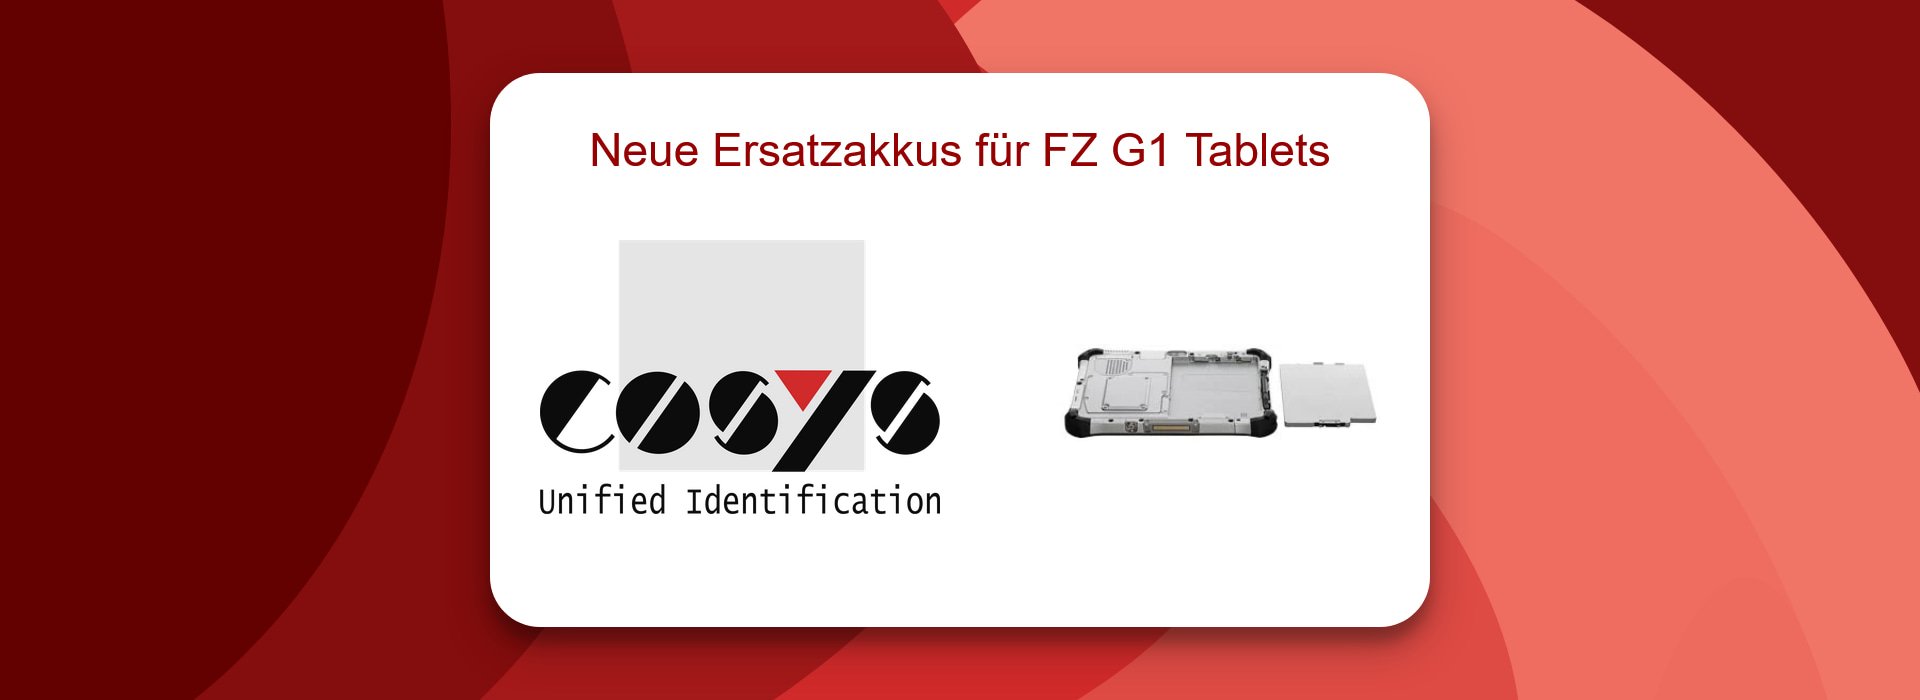 Neue Ersatzakkus für FZ G1 Tablets